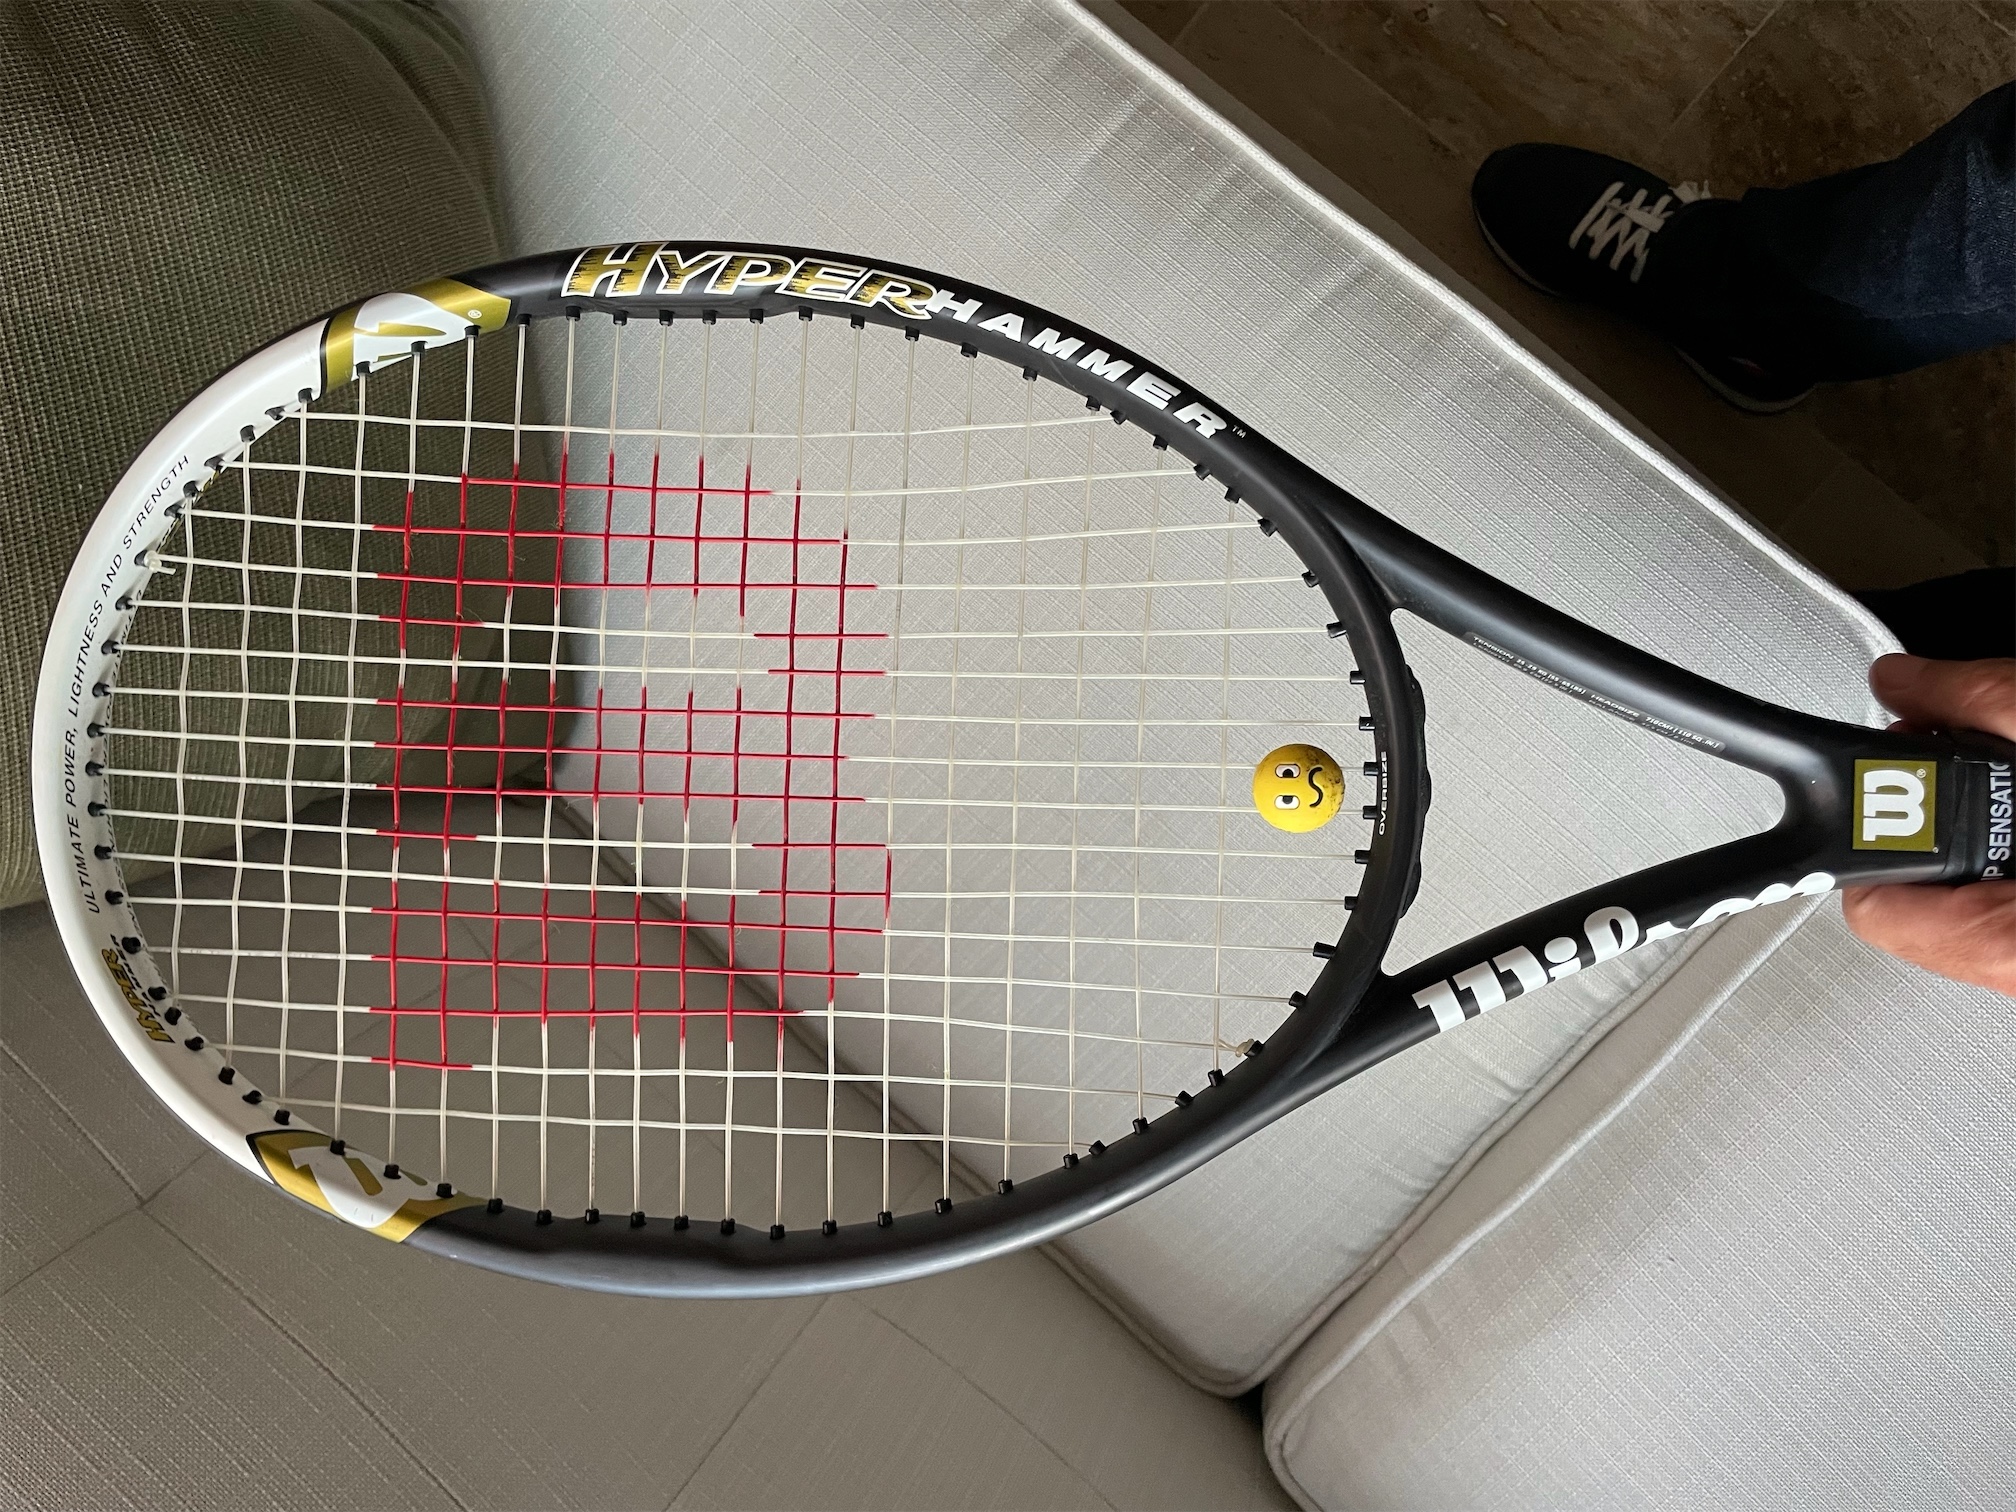 deportes - Raqueta de tenis Wilson, Hyper Hammer 5.3 4